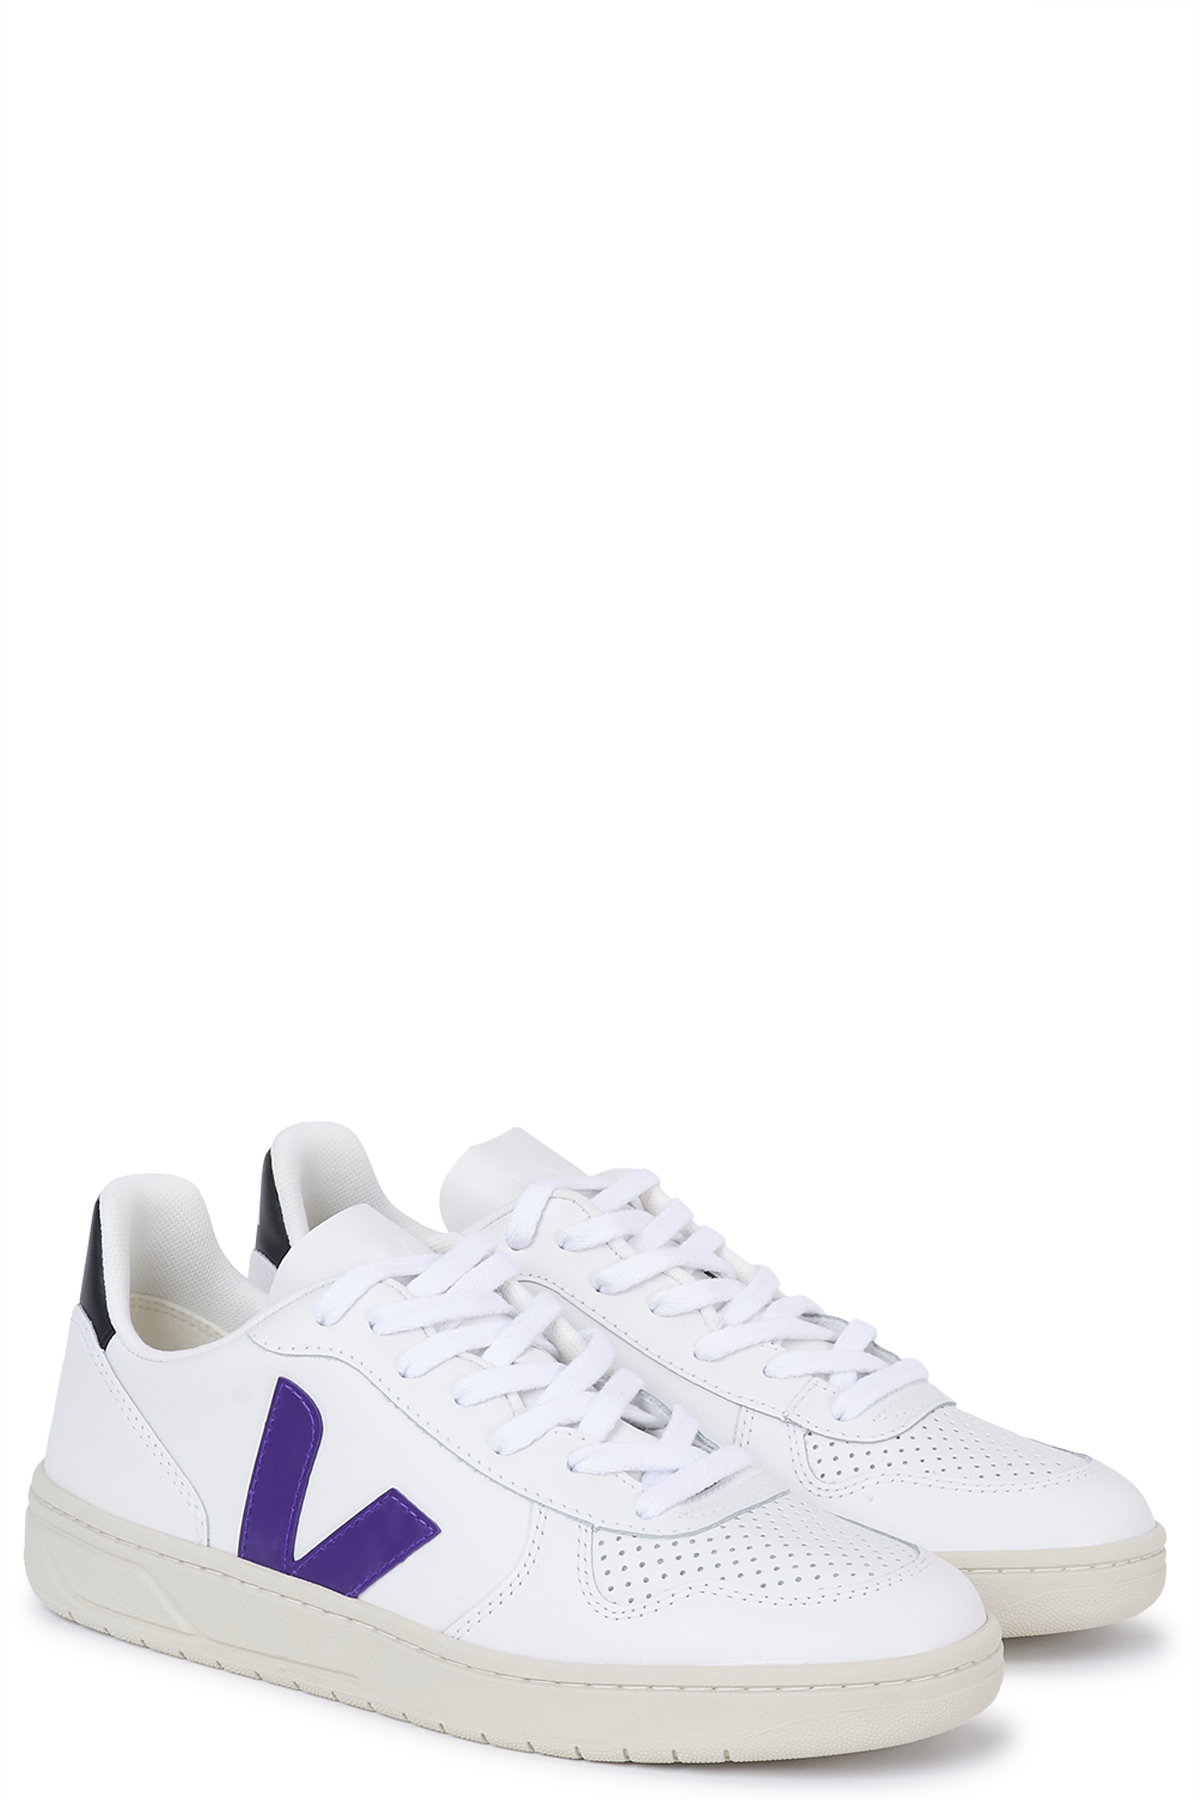 Sneaker V-10 Extra White Purple Black